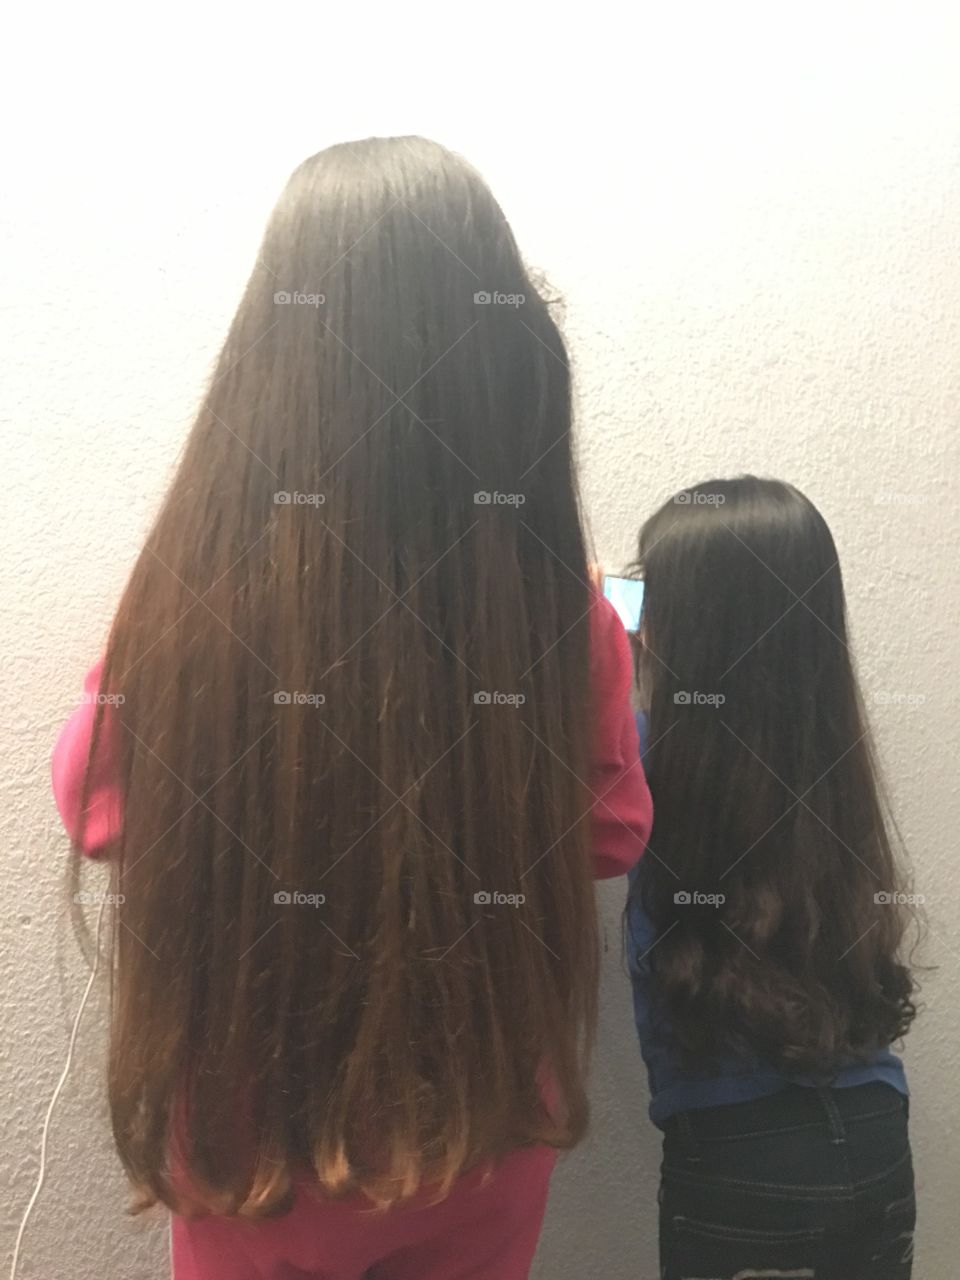 Long hair dilemma 